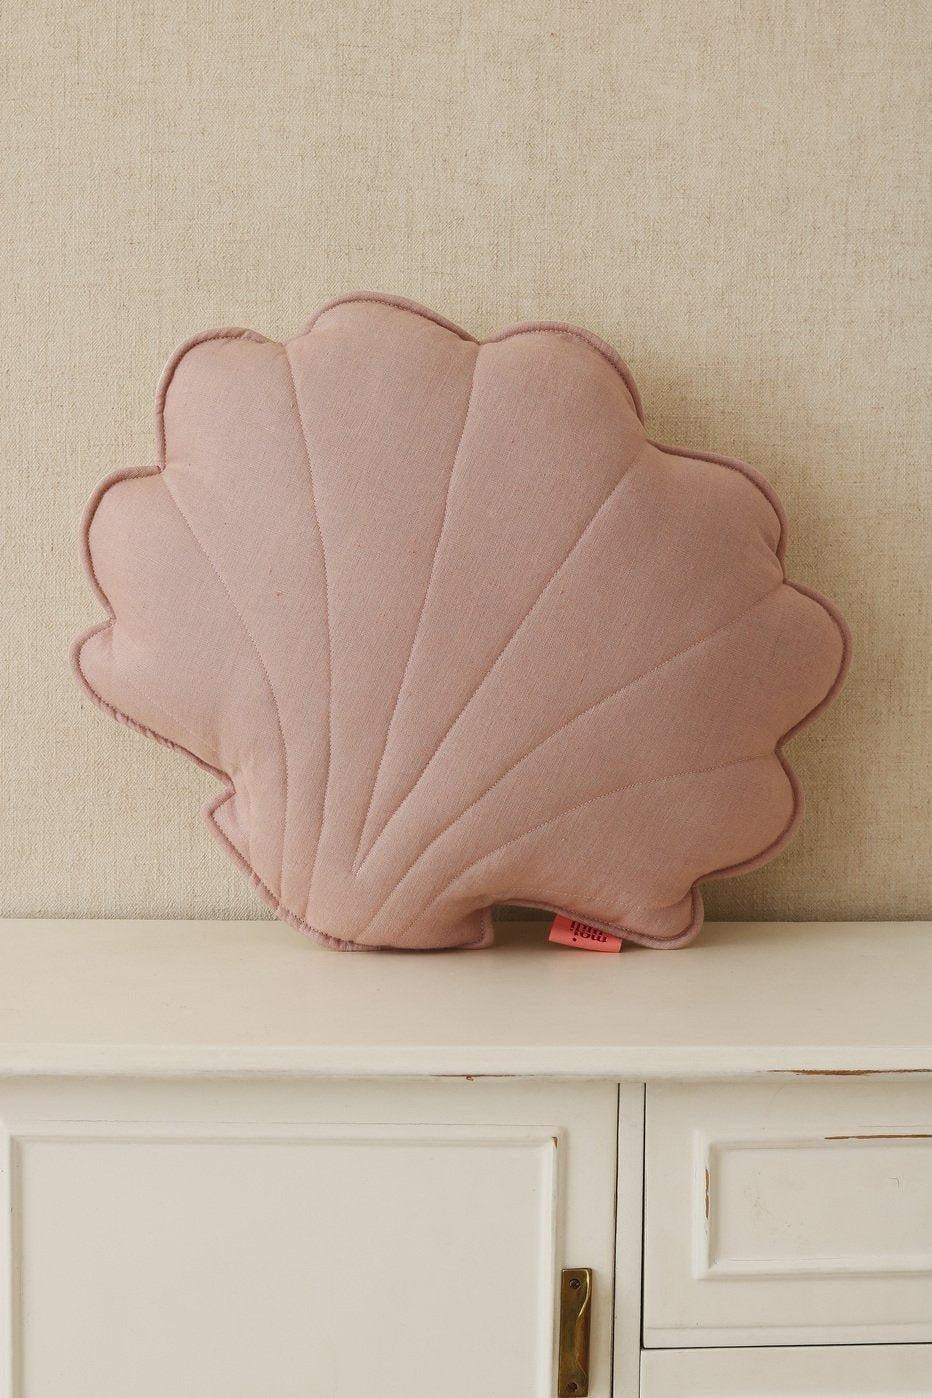 Shell Pillow Linen “Powder Pink” | Kids Room & Nursery Decor